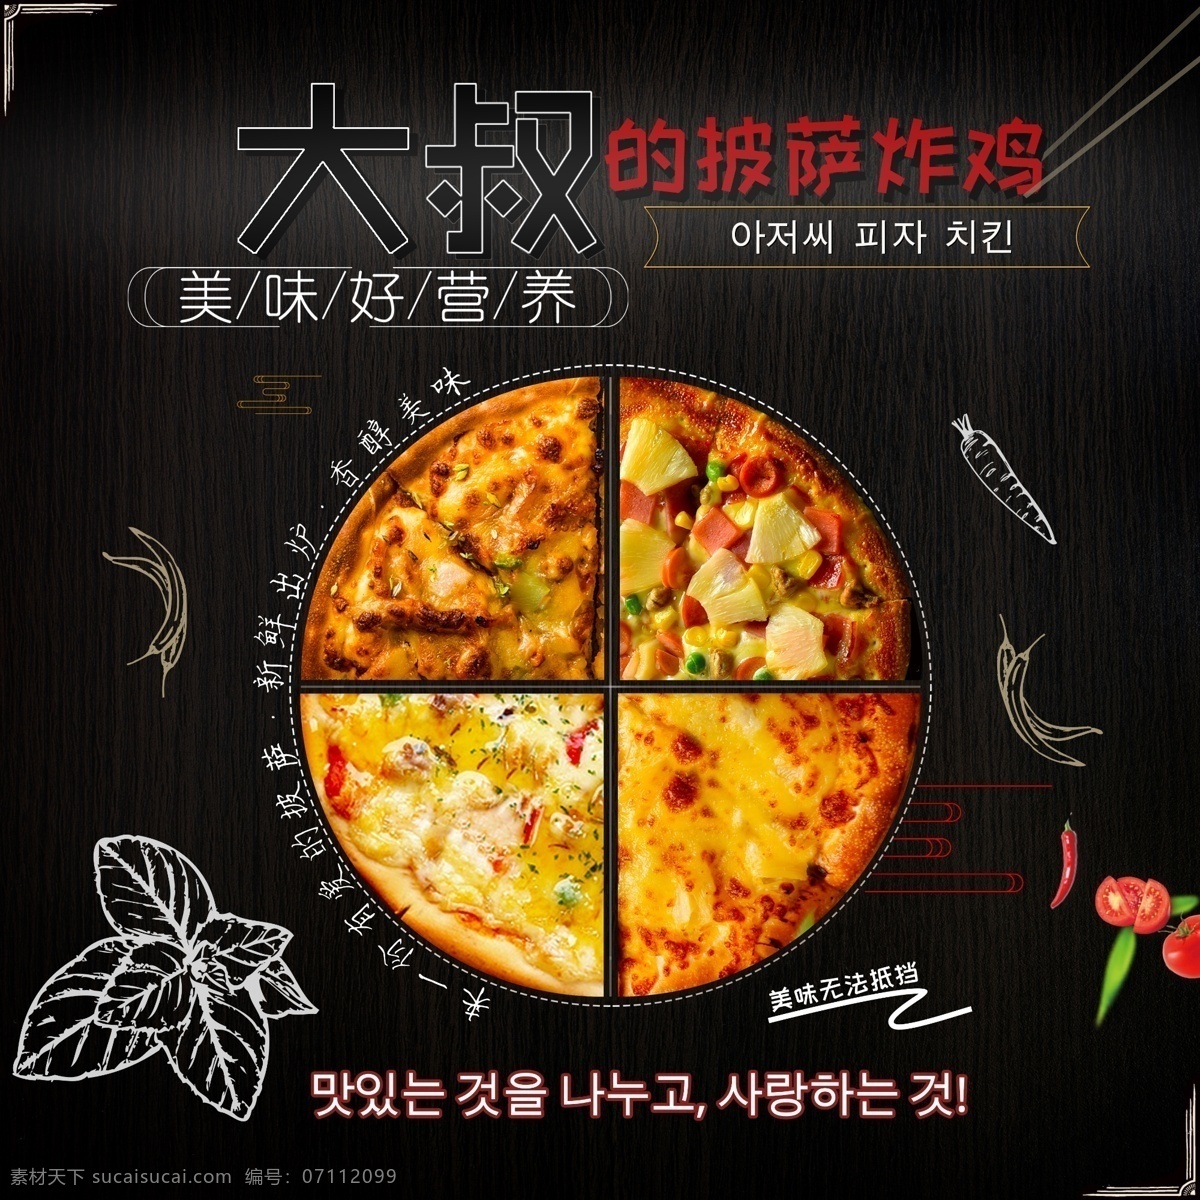 黑色披萨包装 披萨 炸鸡 包装 手绘 韩国 包装设计